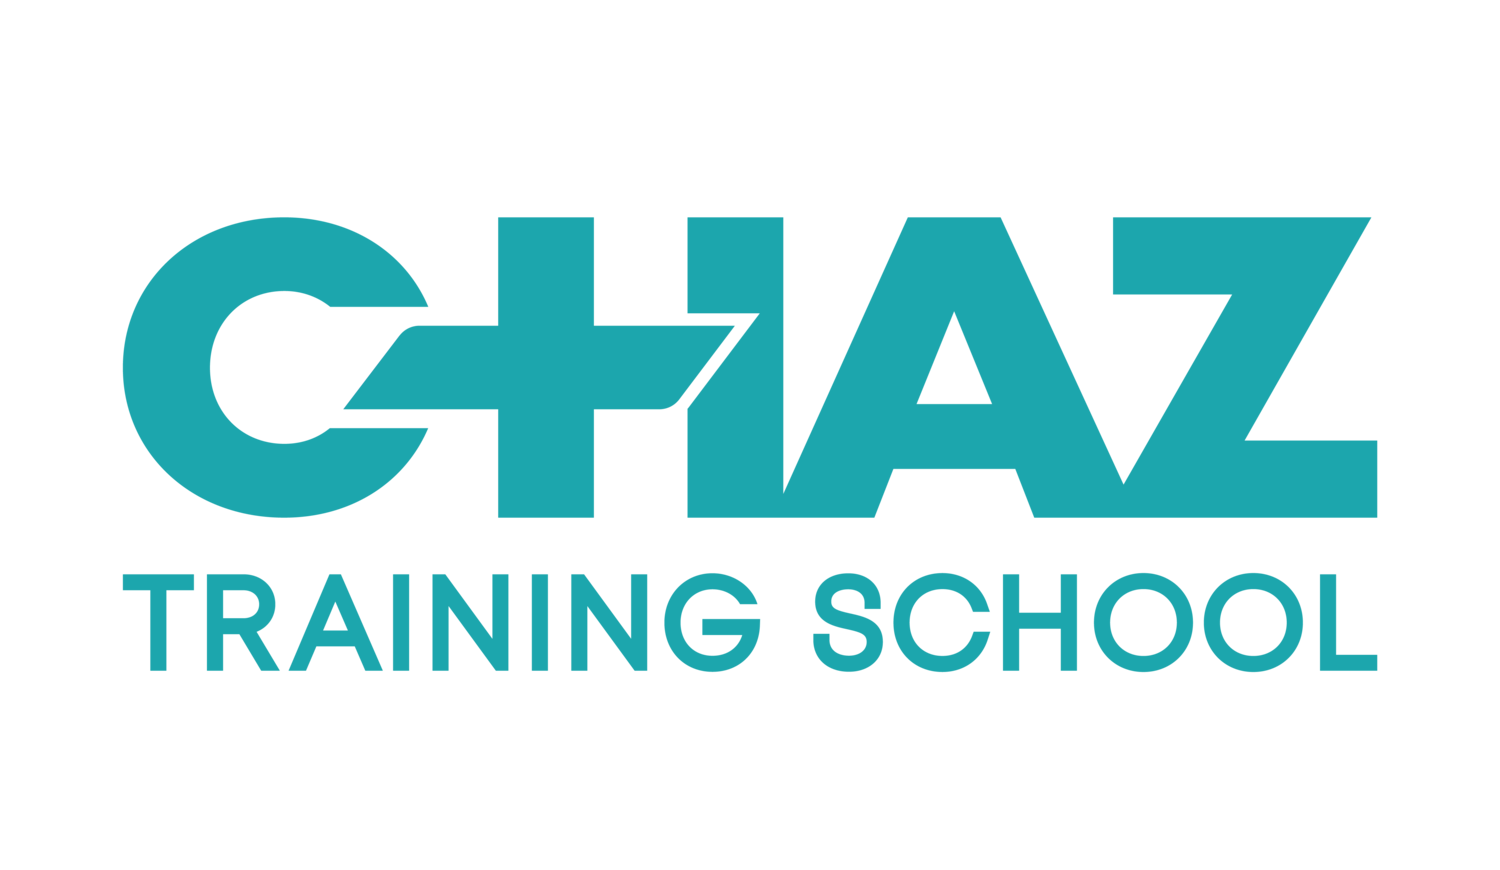 CHAZ Training School